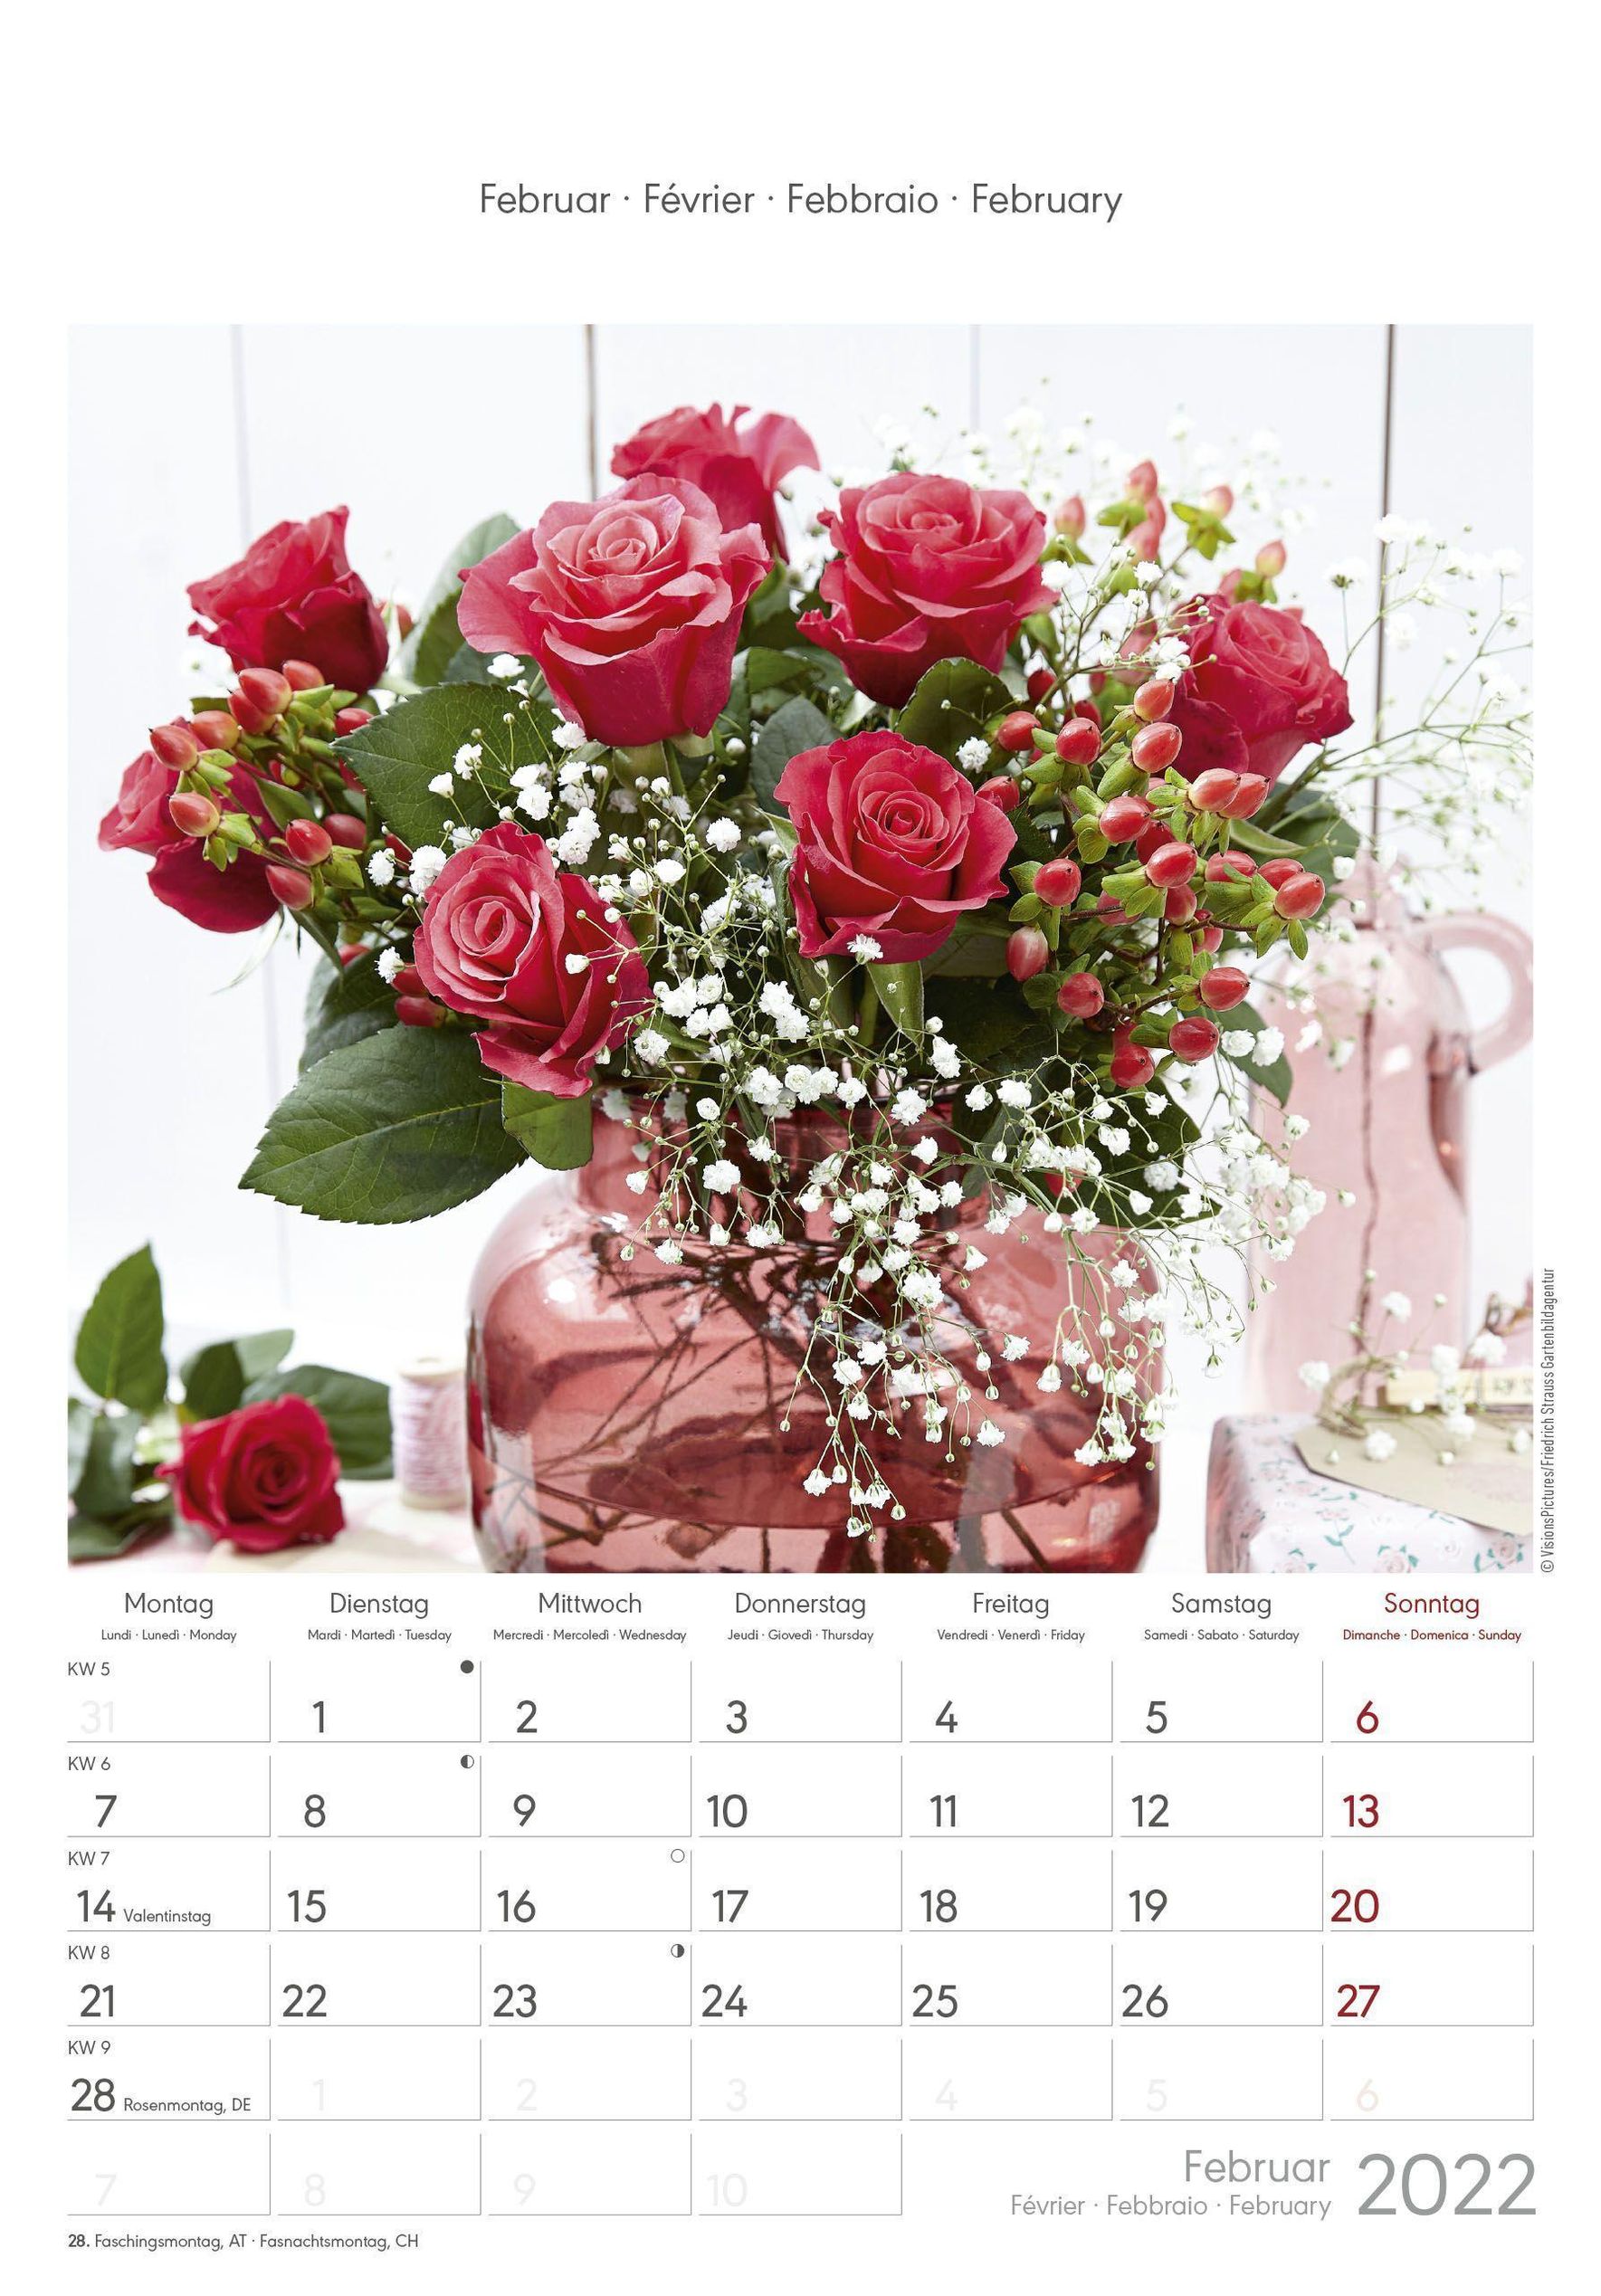 Rosenträume 2022 - Bildkalender 23,7x34 cm - Kalender mit Platz für Notizen  - mit vielen Zusatzinformationen - Rose Drea - Kalender bestellen